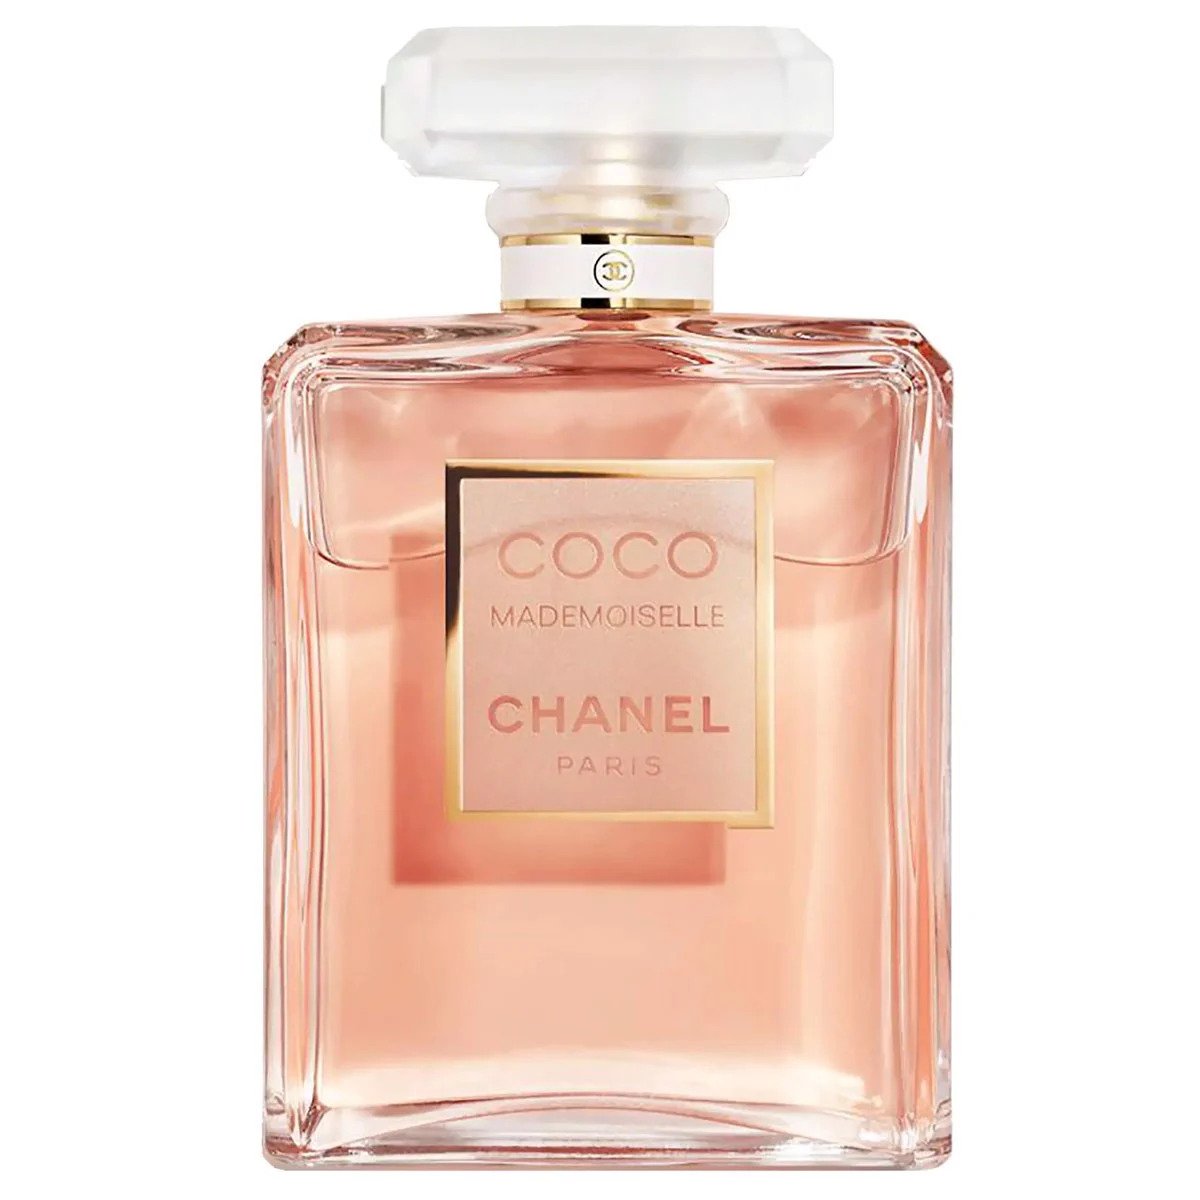 CHANEL Paris  Venise Perfume Review  Les Eaux de CHANEL Perfume  EDT  fragrance  YouTube